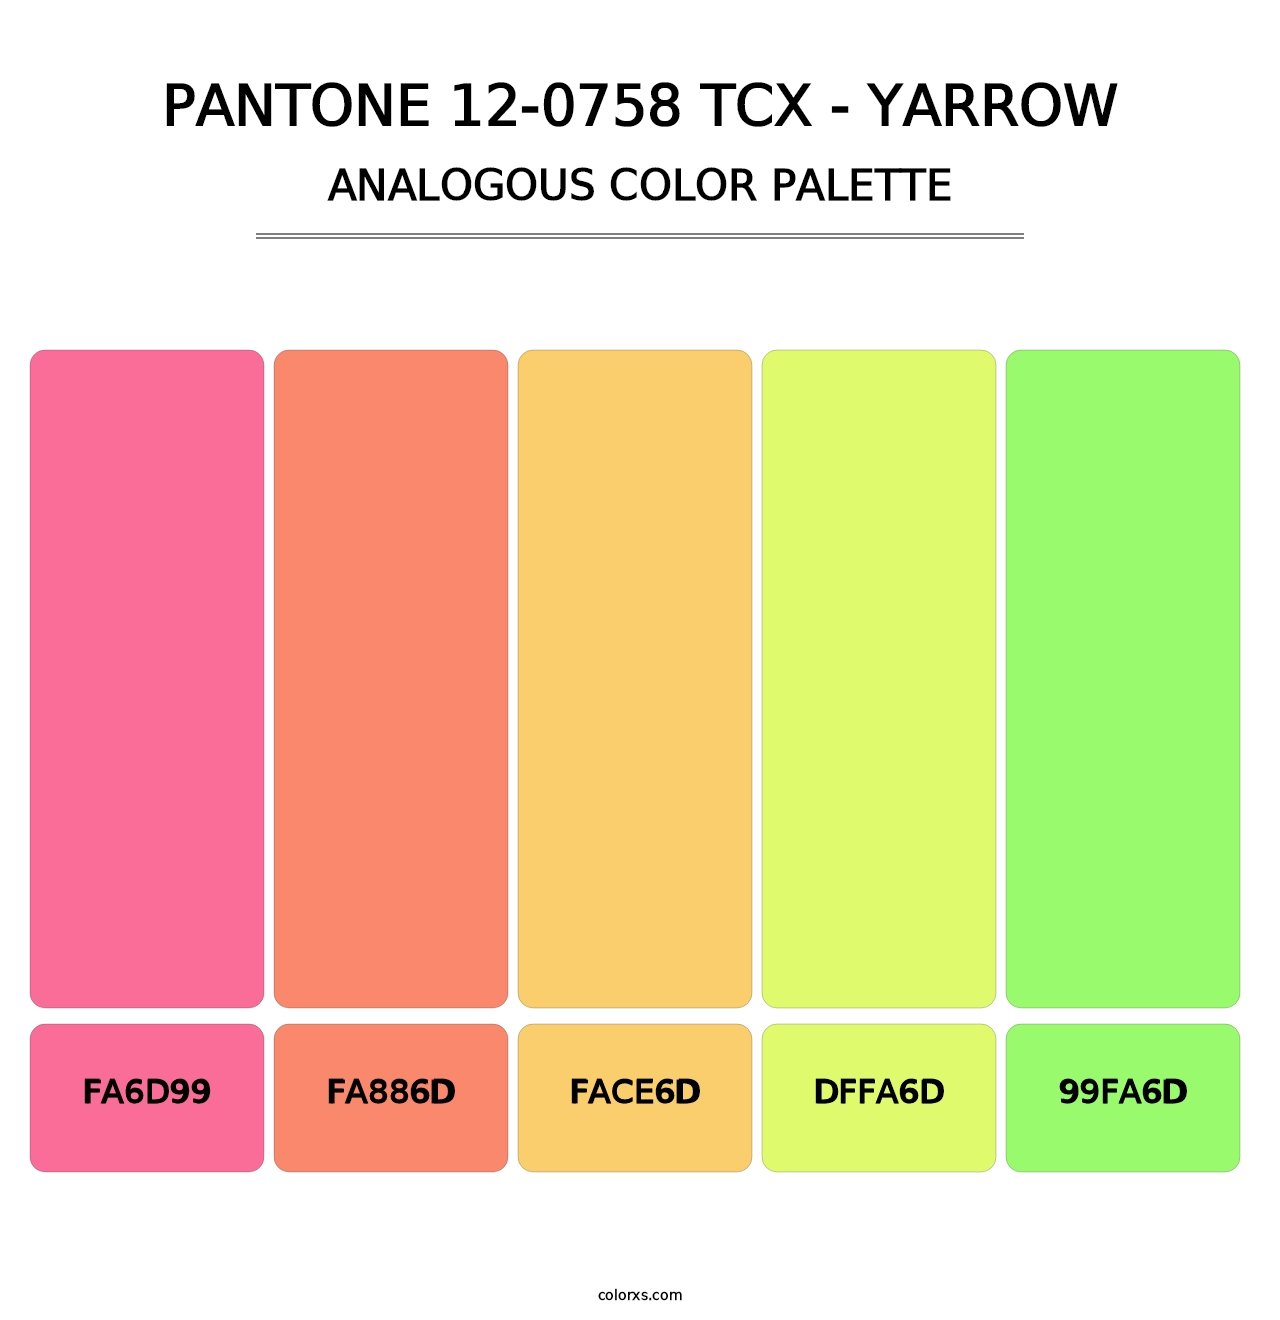 PANTONE 12-0758 TCX - Yarrow - Analogous Color Palette